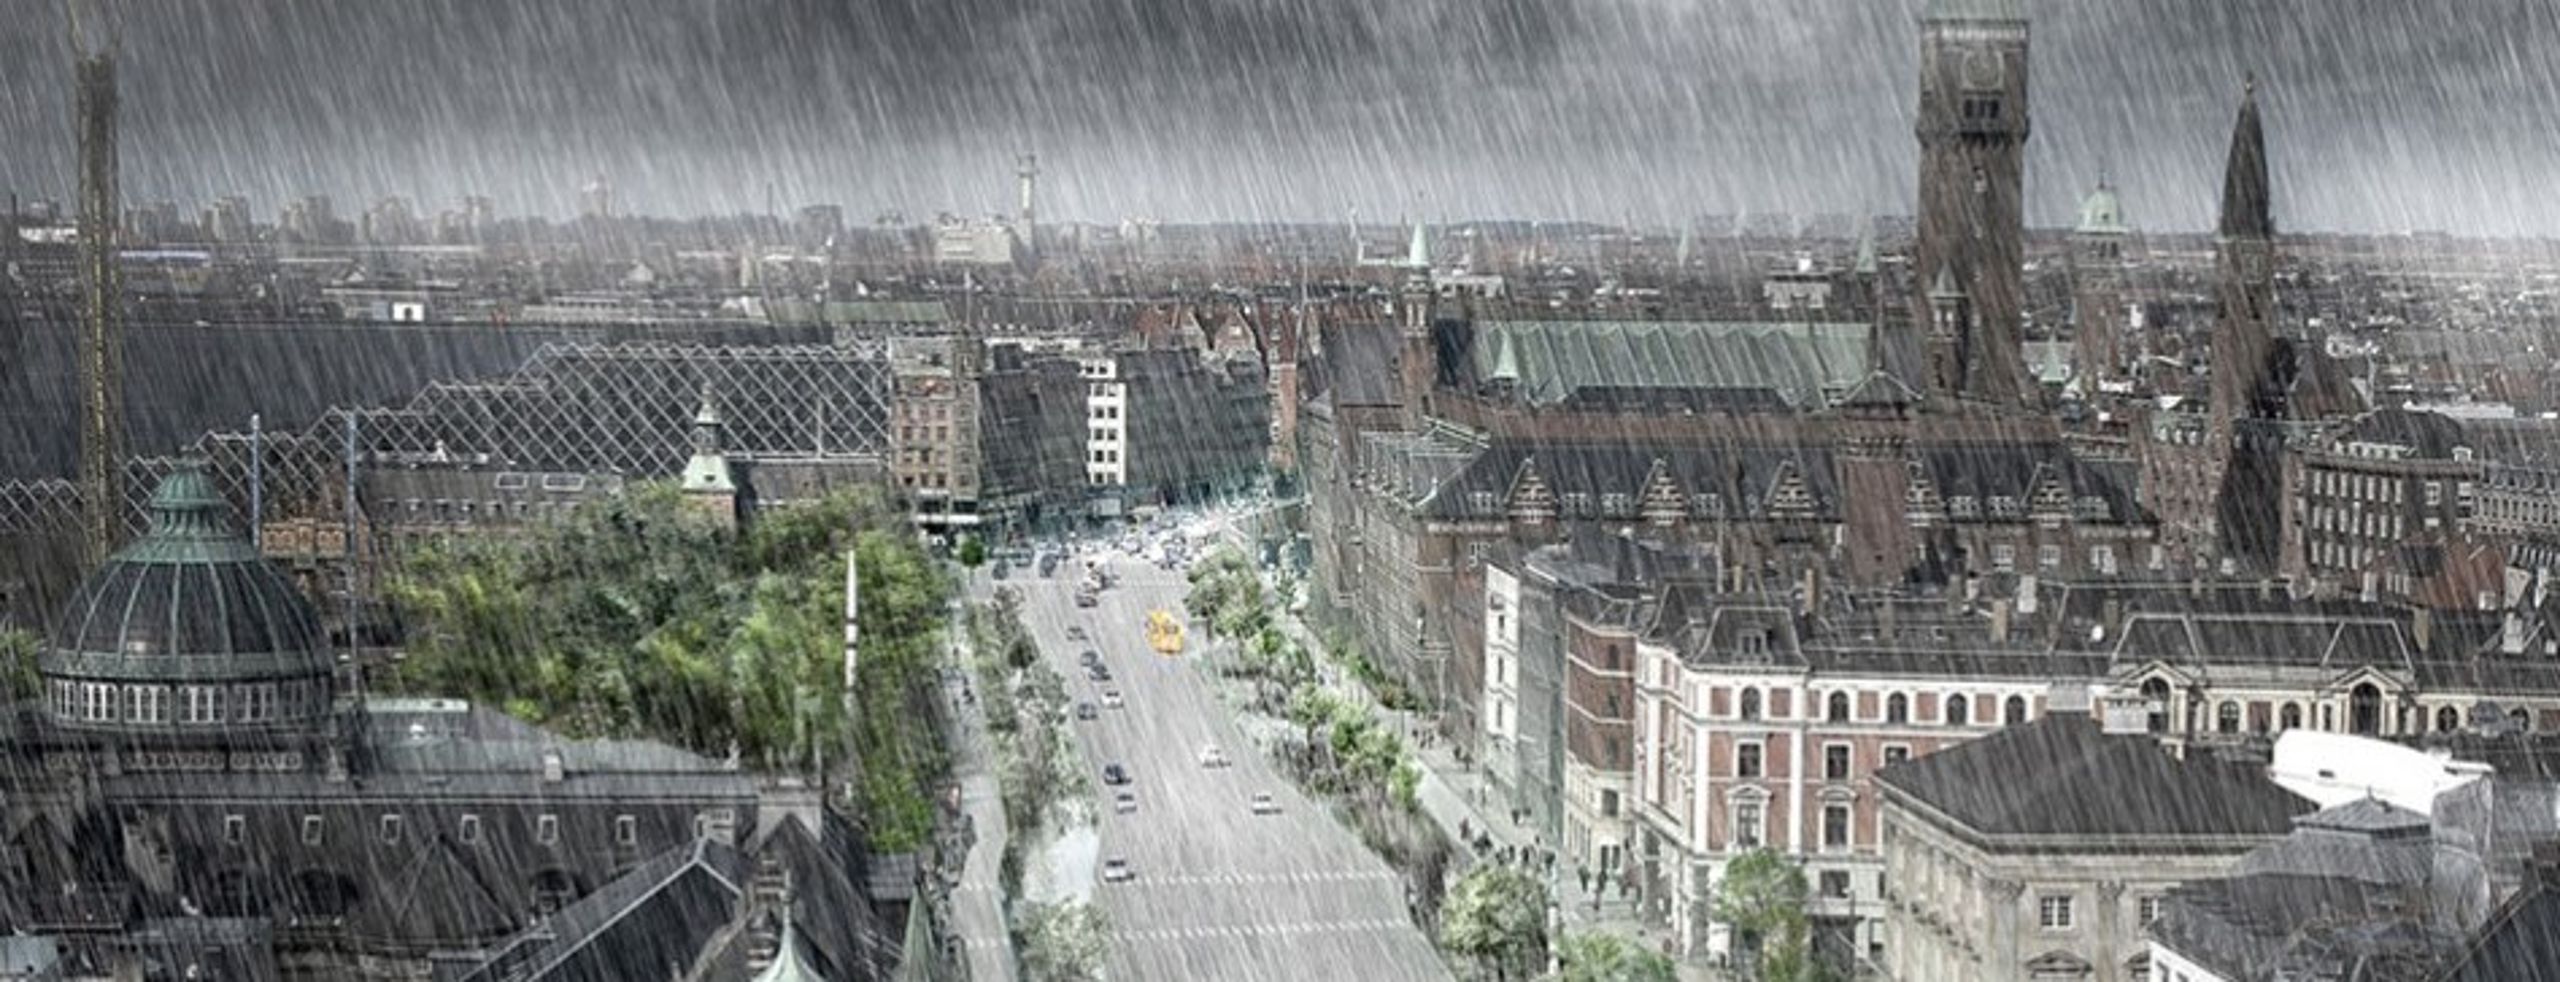 Sådan vil det ifølge en grafisk præsentation kunne se ud, når København atter rammes af et voldsomt skybrud.